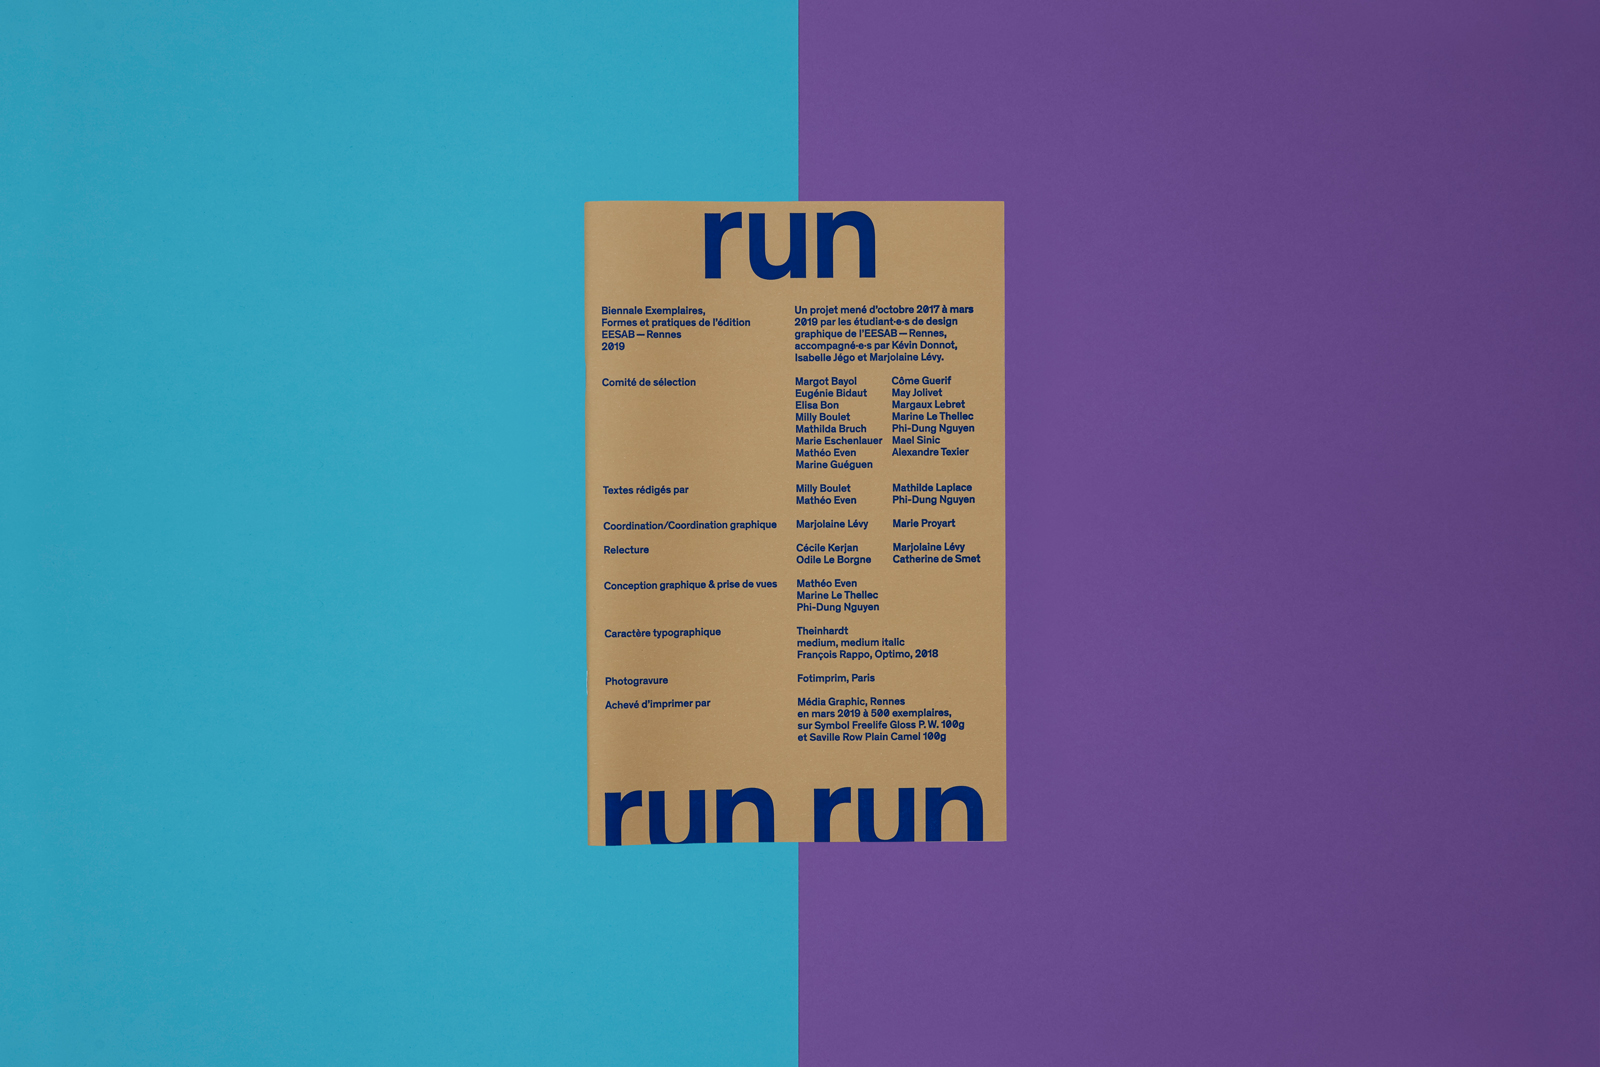 Couverture de la publication Run Run Run pour la biennale Exemplaires 2019